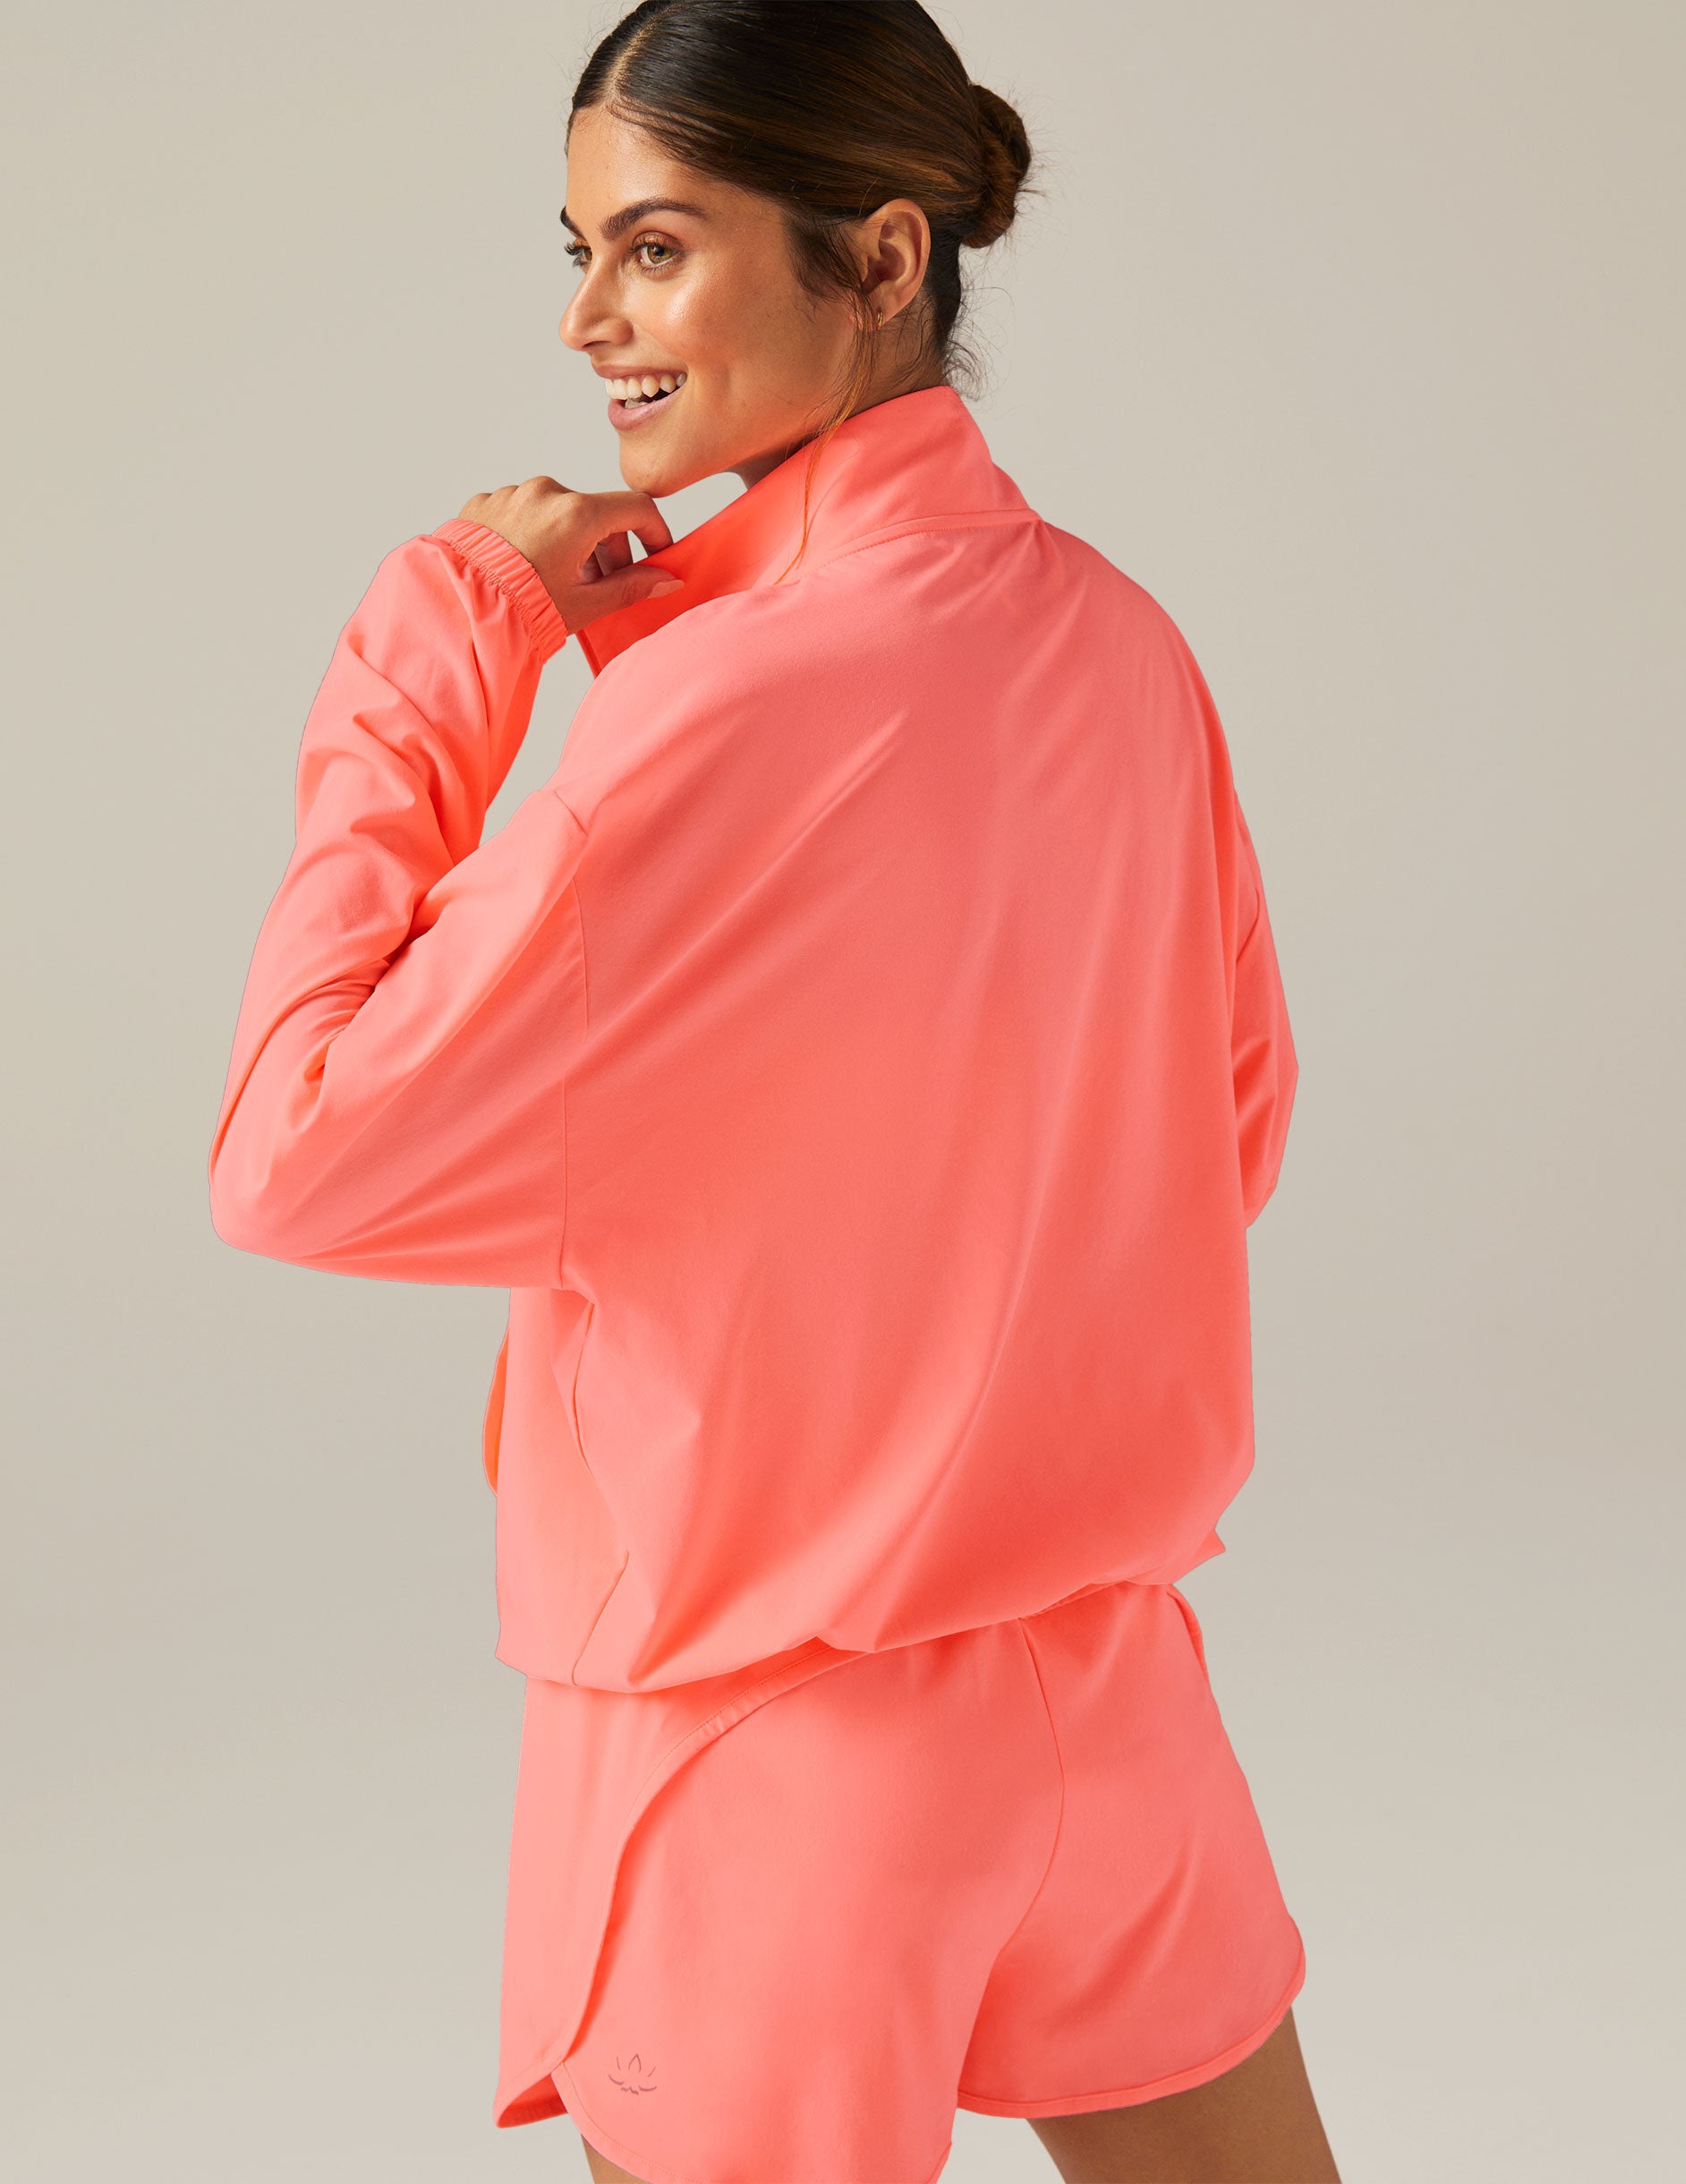 pink half zip jacket with kangaroo pockets at front